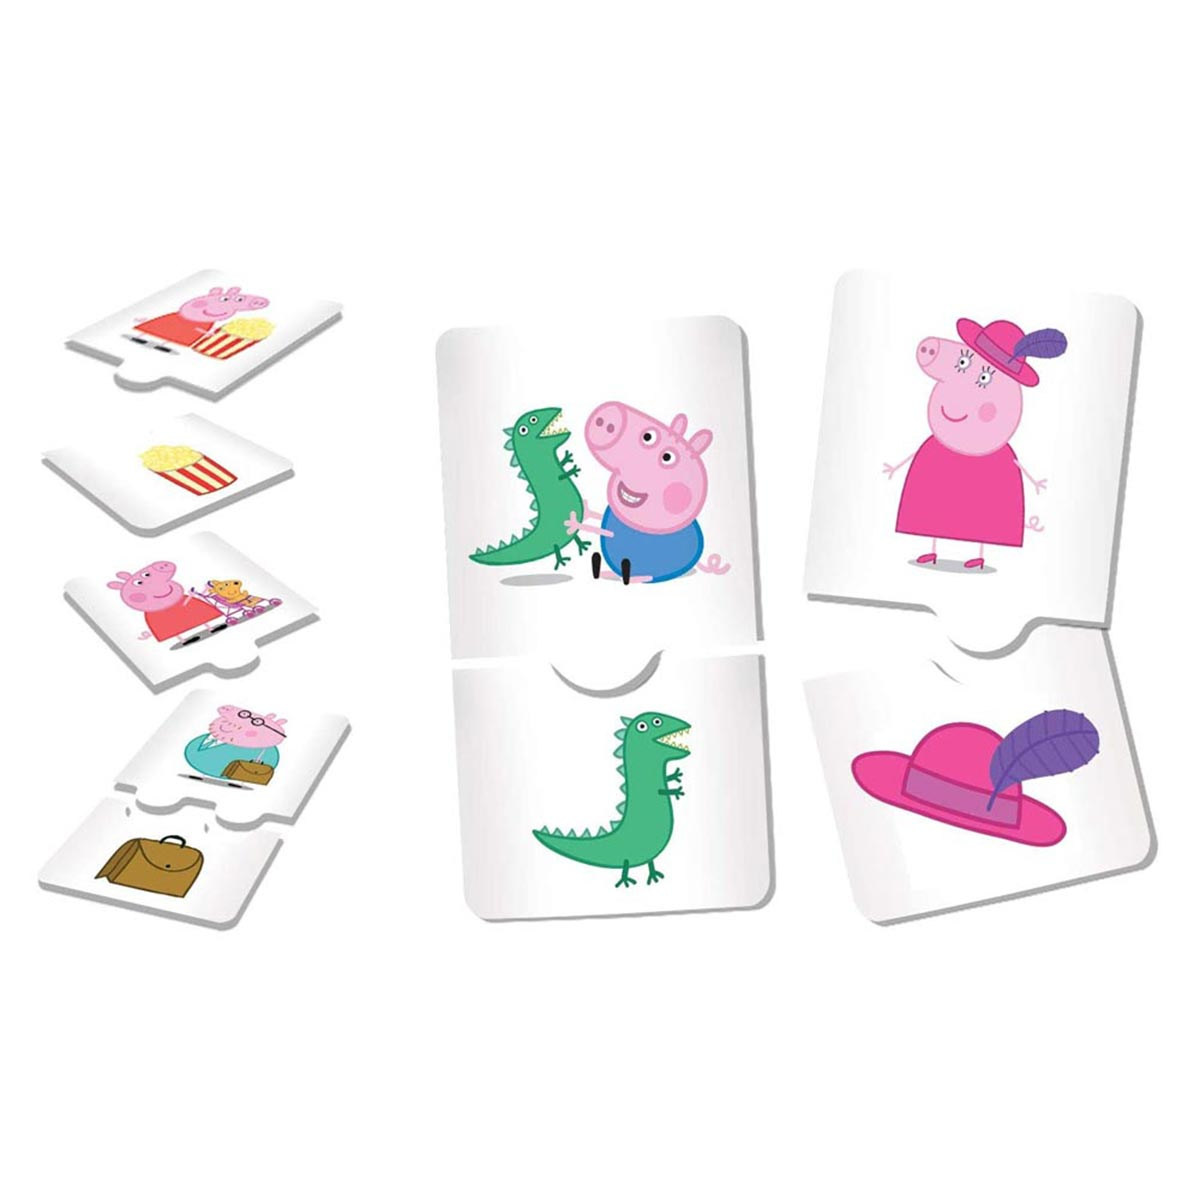 von 10 PEPPA PIG mehrfarbig Lisciani Lernspiele, Spielen, Lernspielsammlung Pig Peppa mit